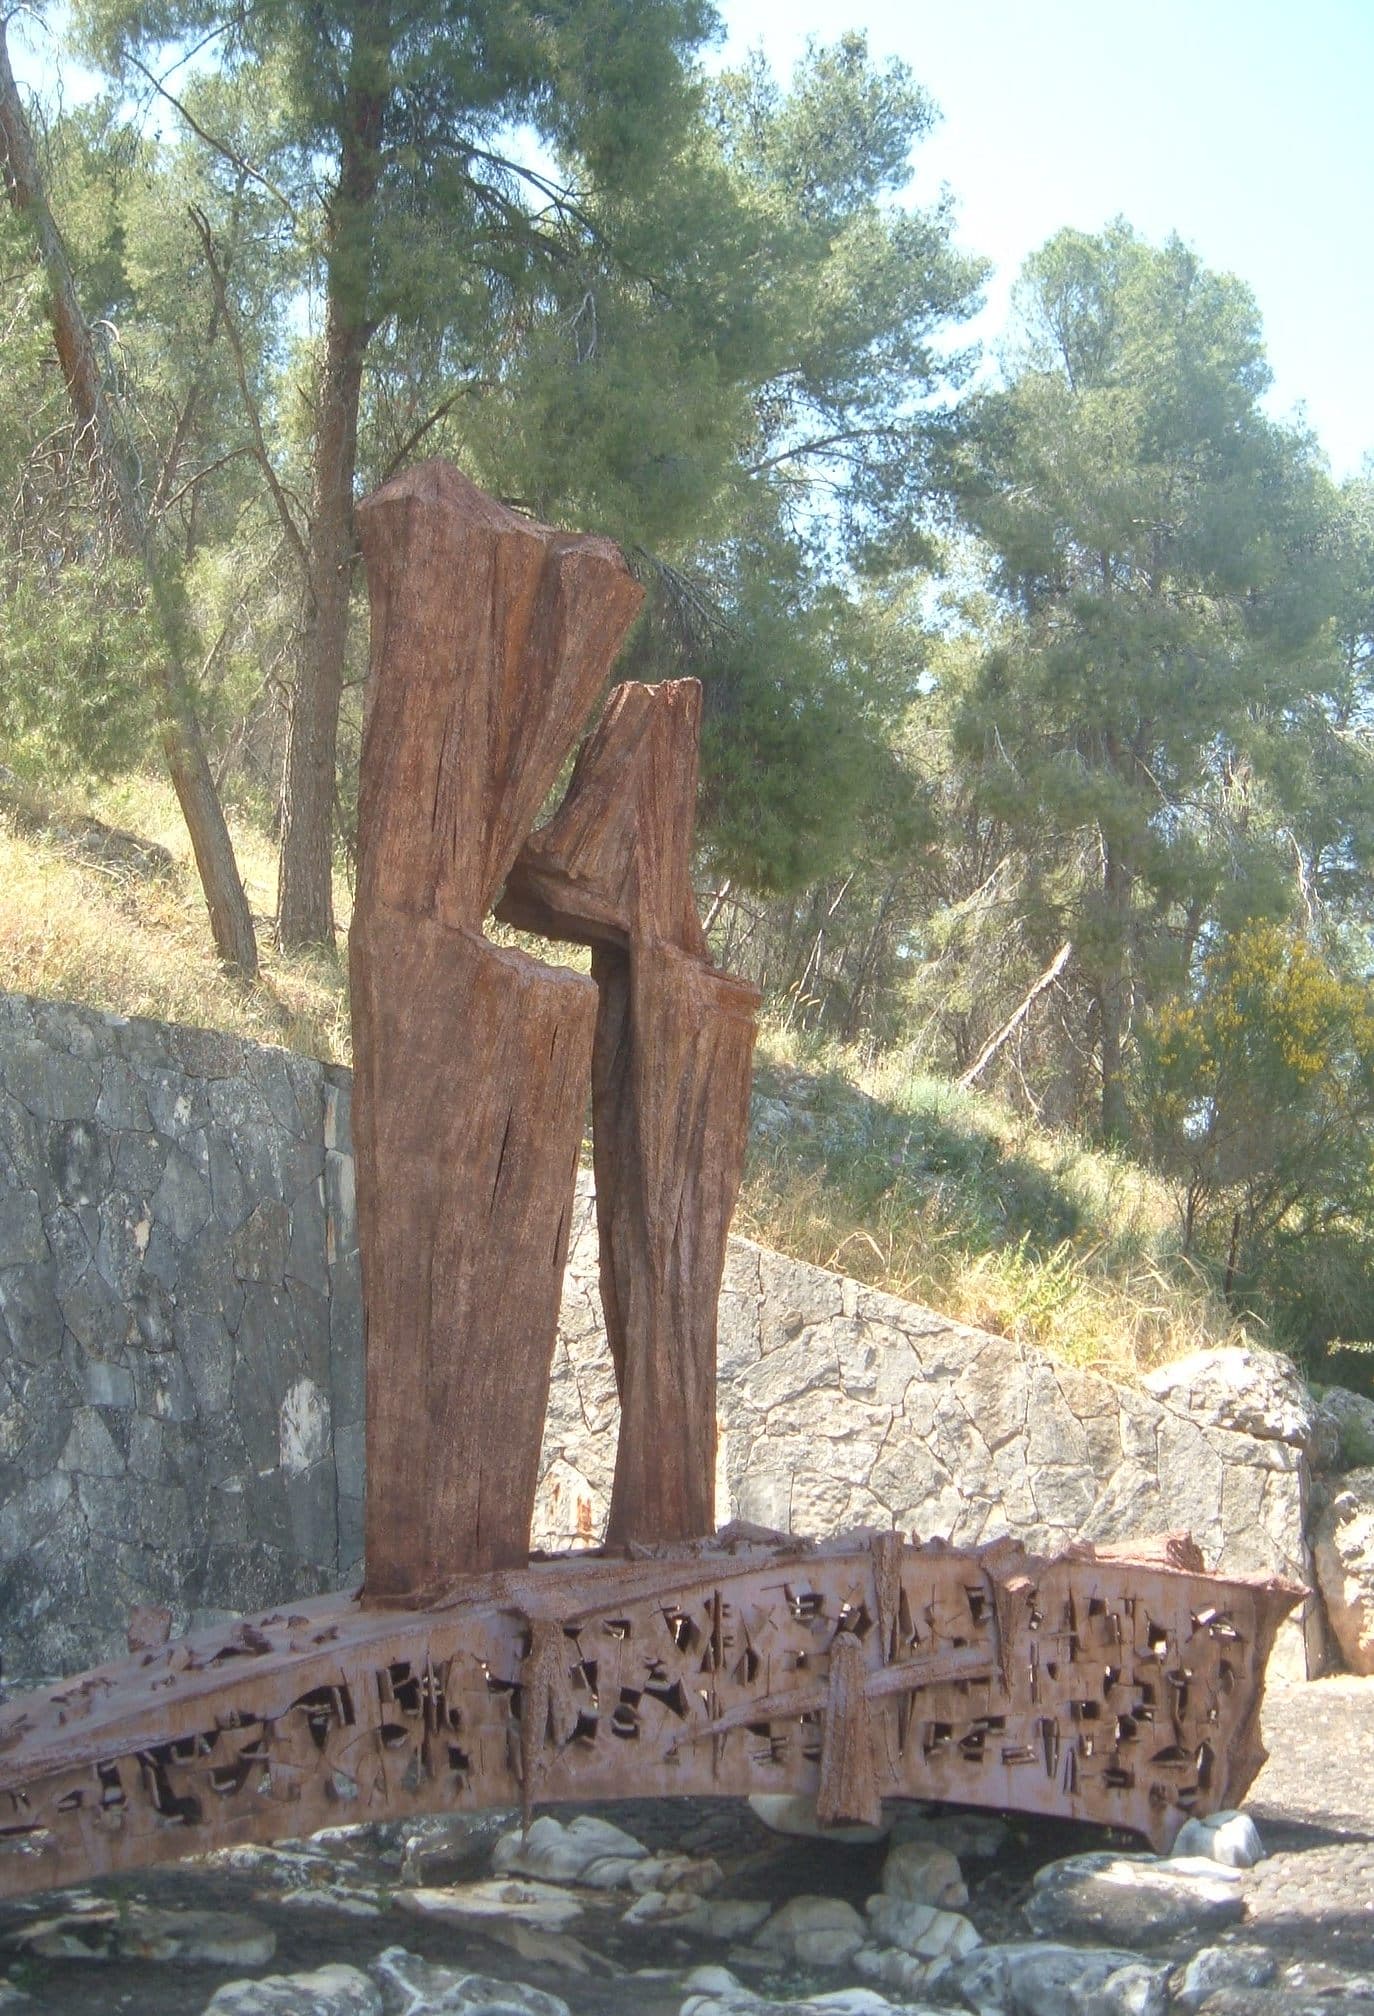 יד לבני העמק שנפלו פיסל דוד פלומבו, מצוי בשטח הגן הלאומי מעיין חרוד